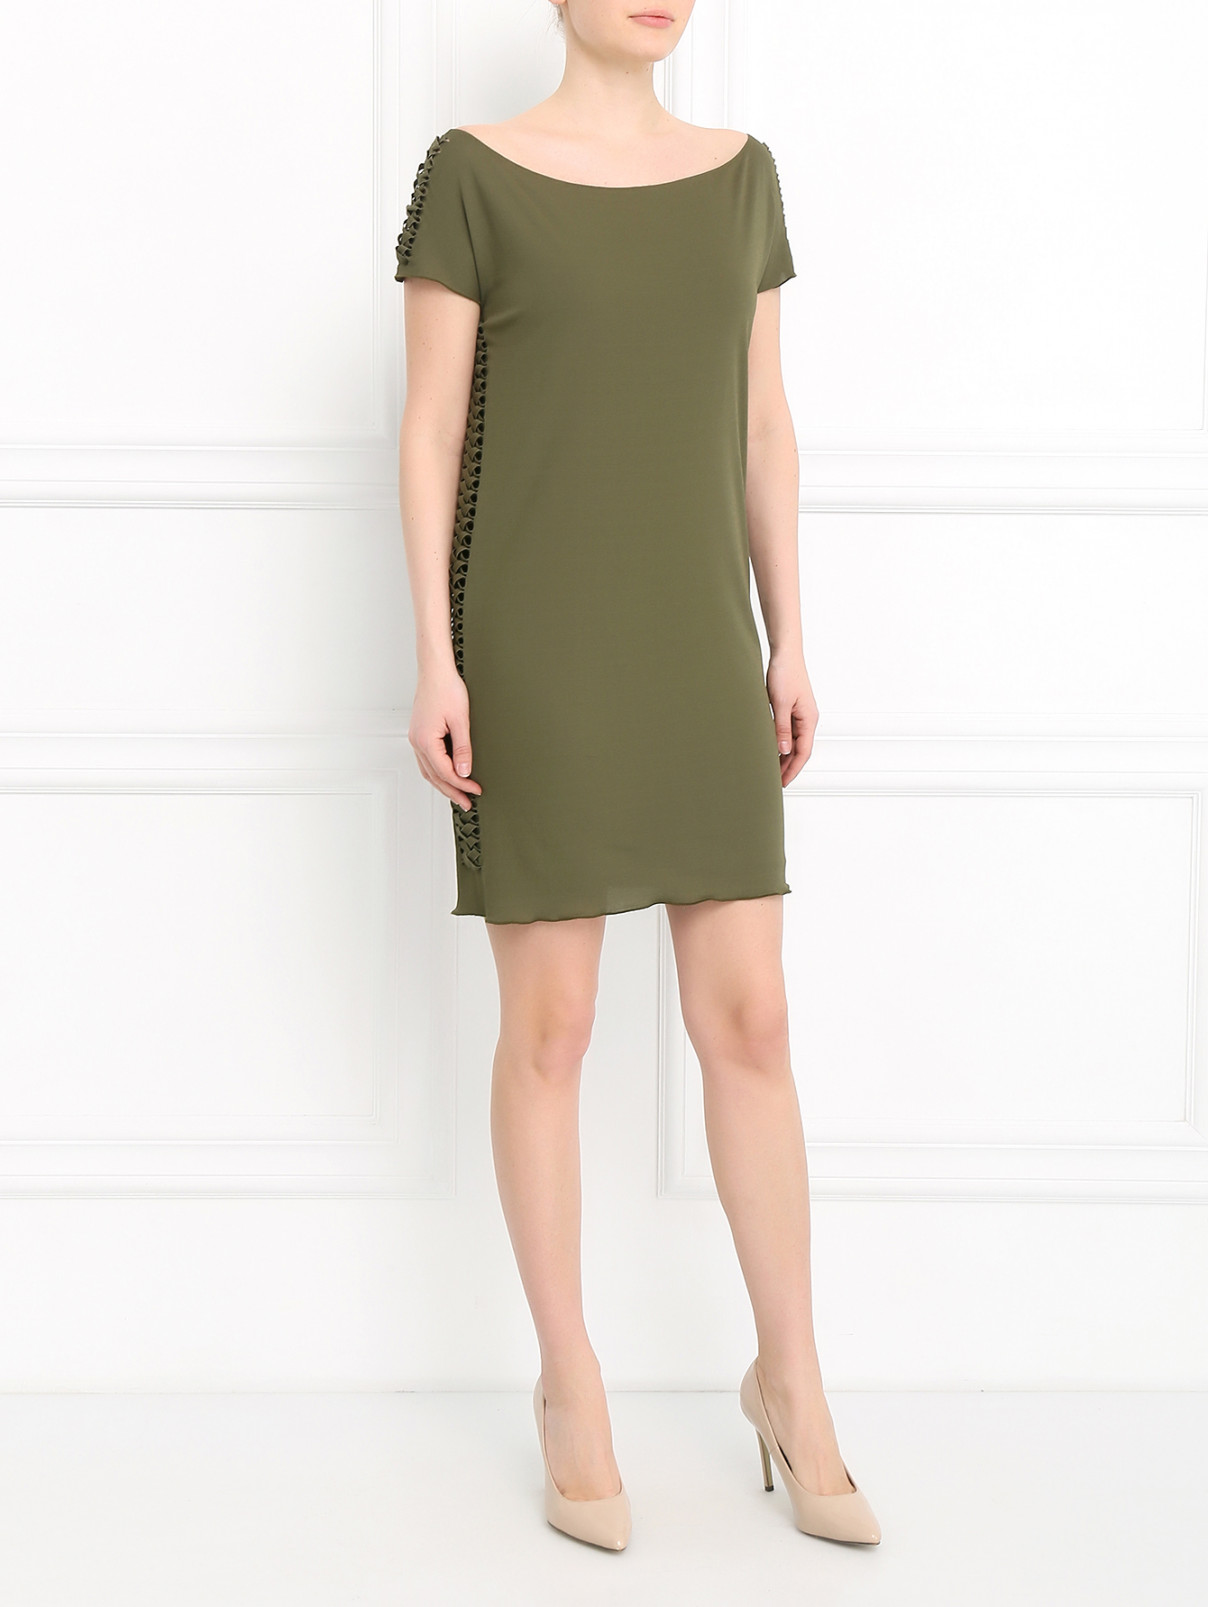 Платье-мини с декоративным плетением Jean Paul Gaultier  –  Модель Общий вид  – Цвет:  Зеленый